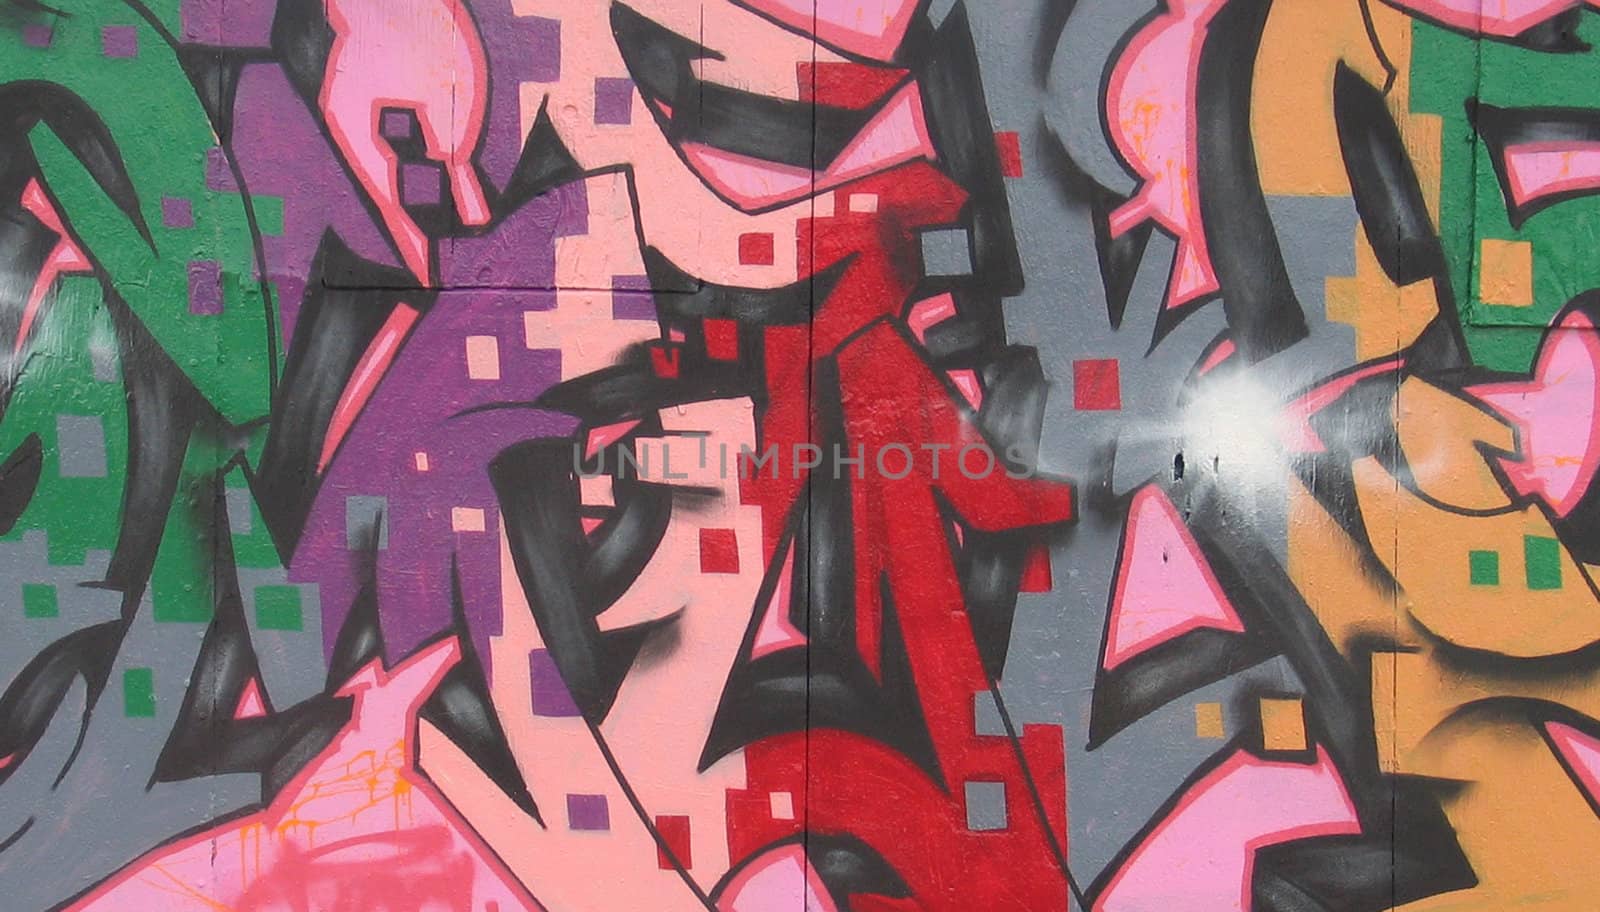 Close up of graffiti on a wall.